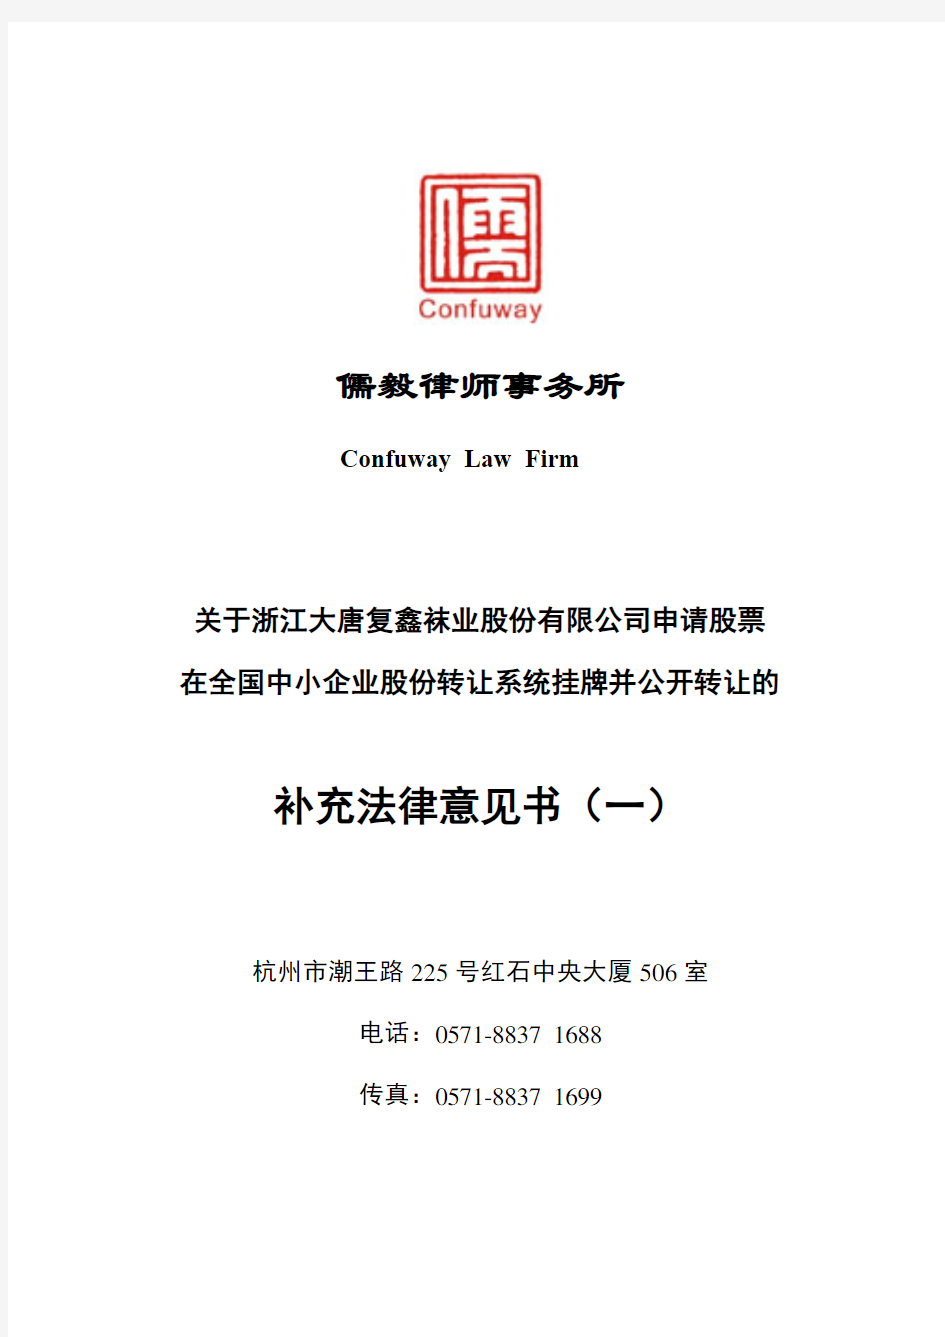 儒毅律师事务所补充法律意见书-全国中小企业股份转让系统